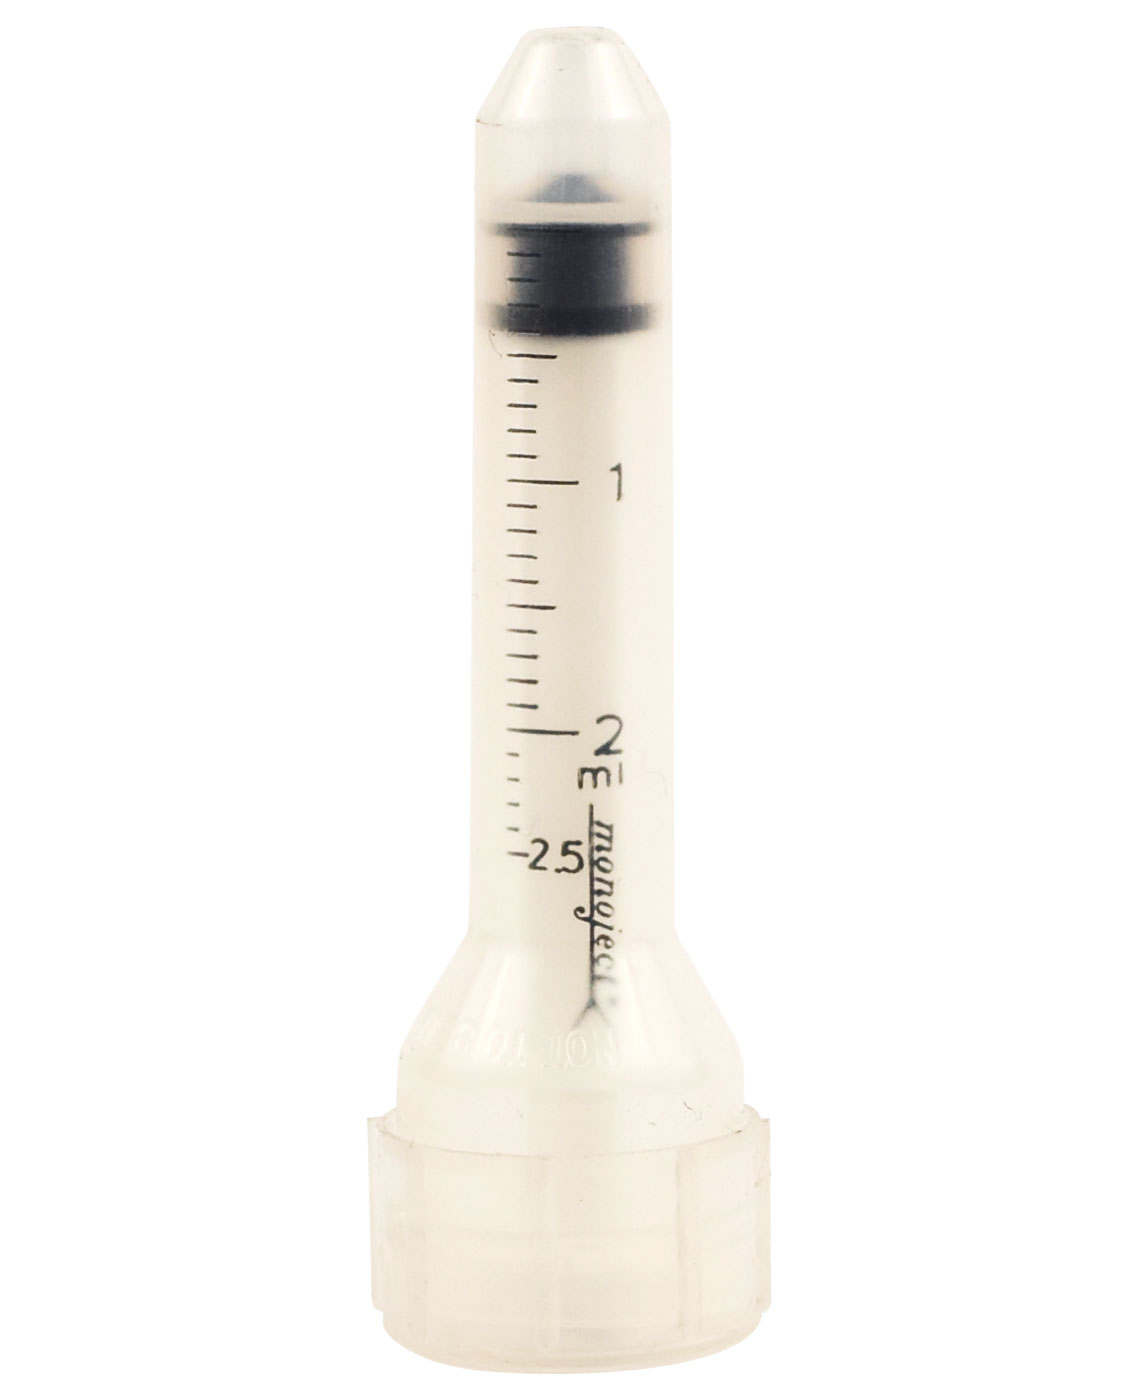 Hypodermic Syringe 2ml | First Aid Fast